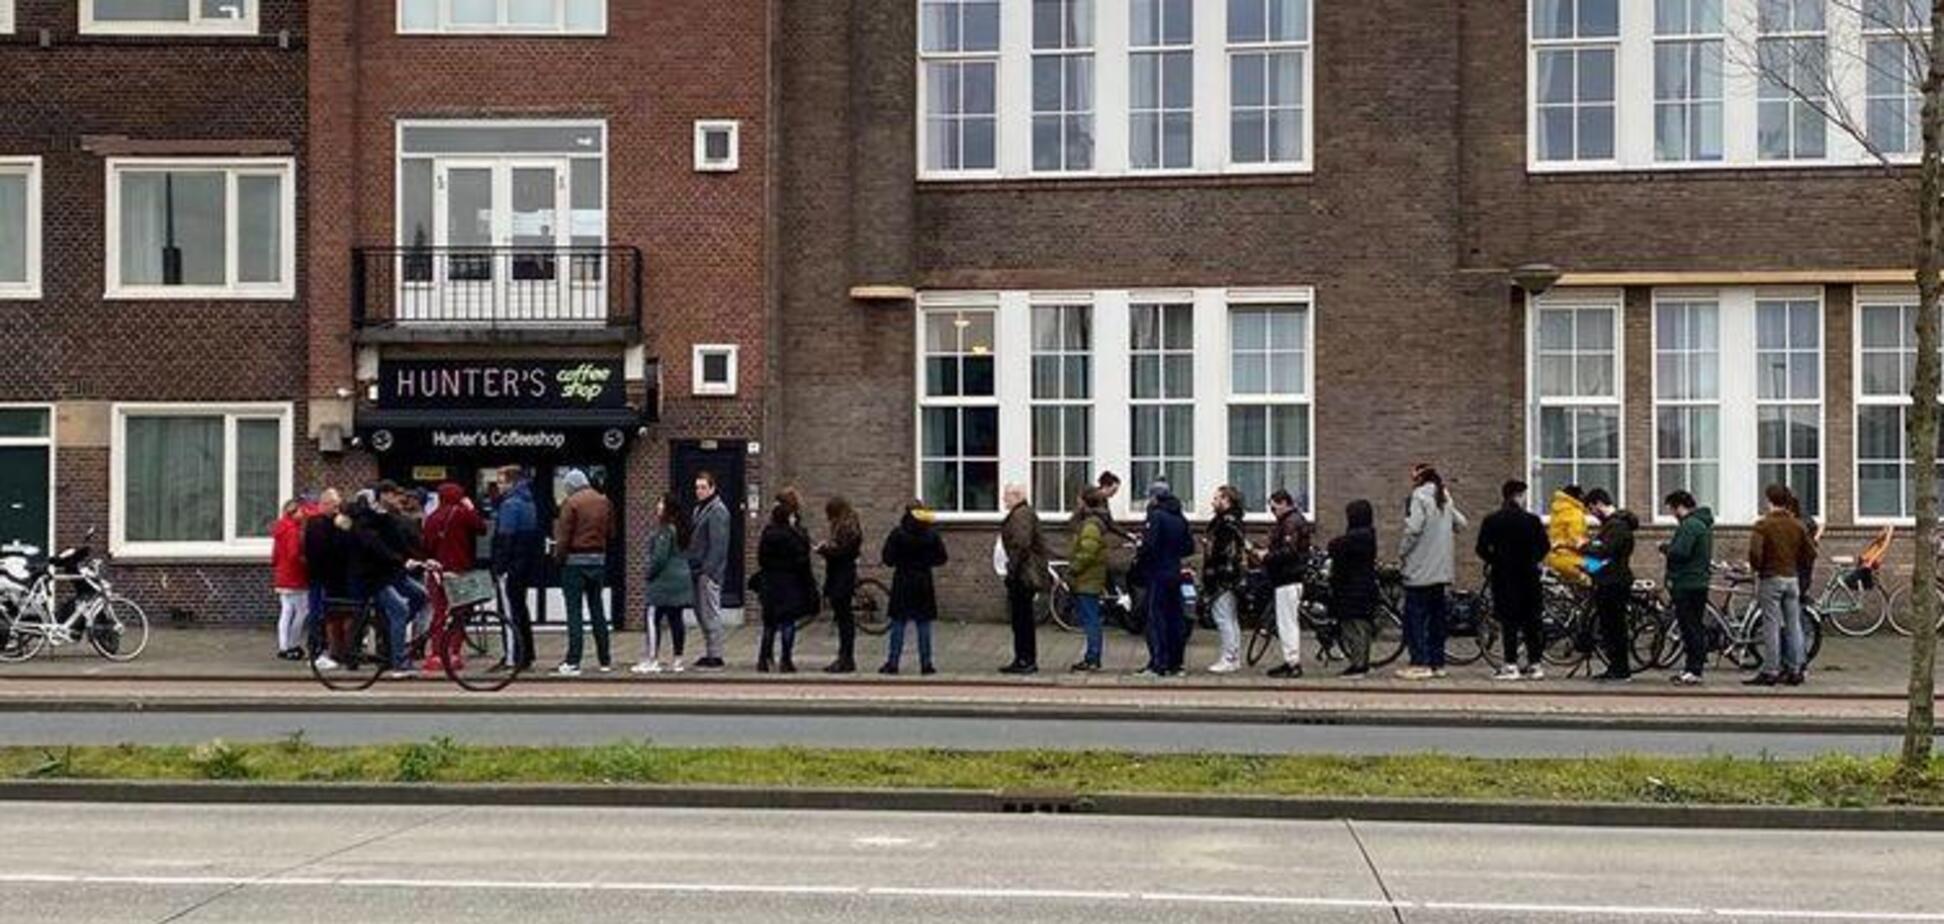 Из-за коронавируса в Нидерландах массово скупают марихуану. Фото